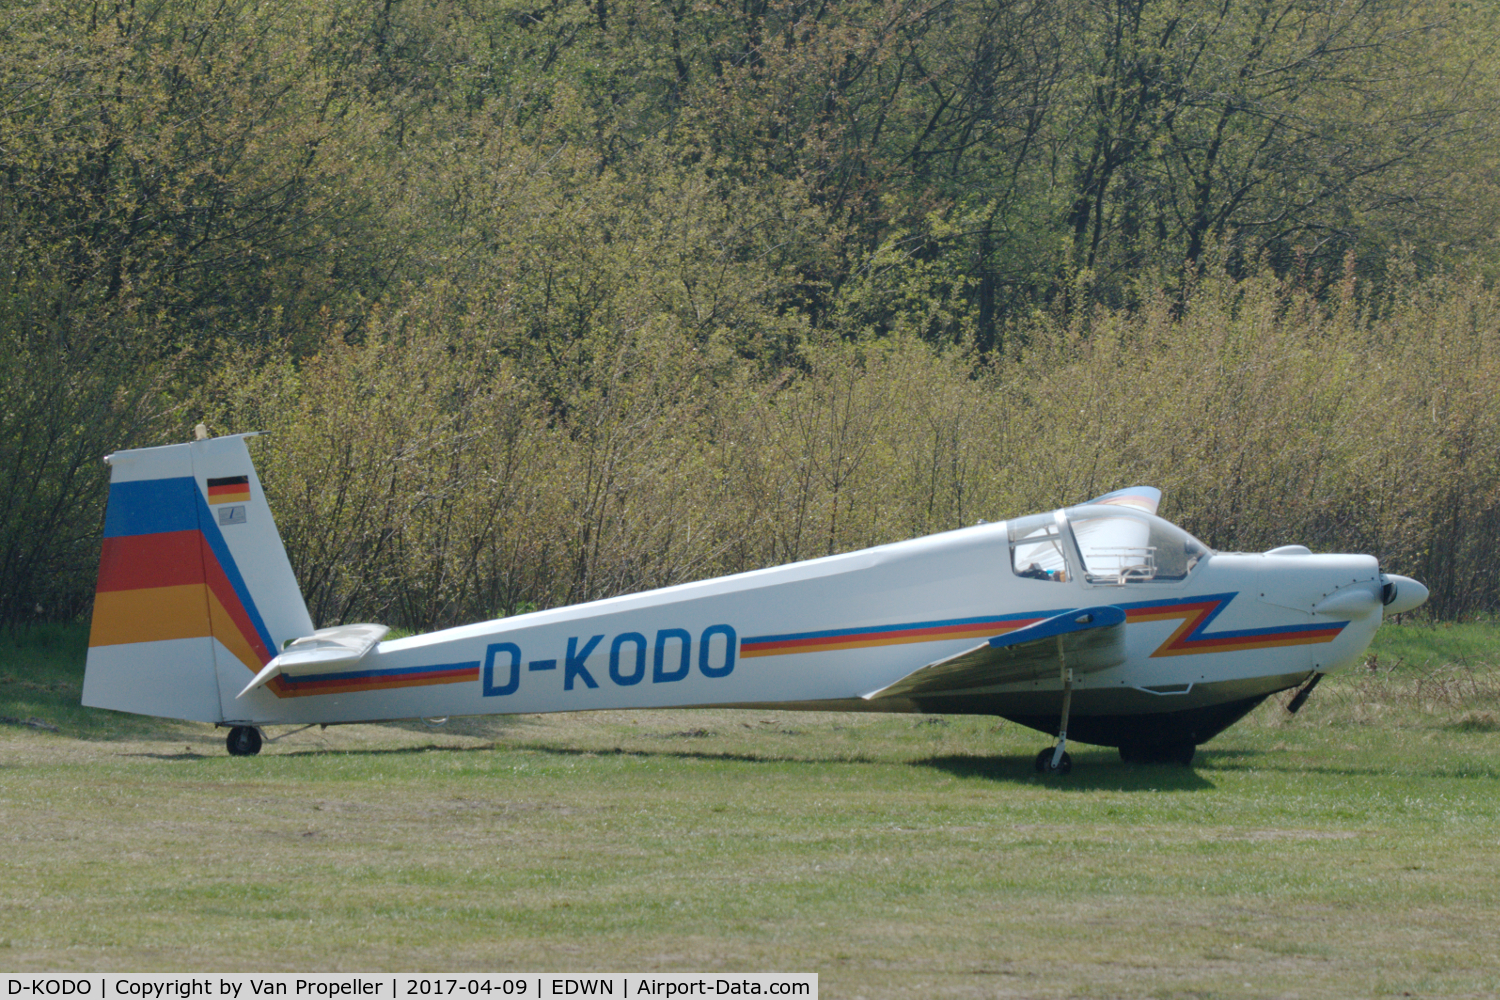 D-KODO, Scheibe SF-25B Falke C/N 4164, Scheibe SF-25B Falke parked at Klausheide (Nordhorn-Lingen) airfield, Germany